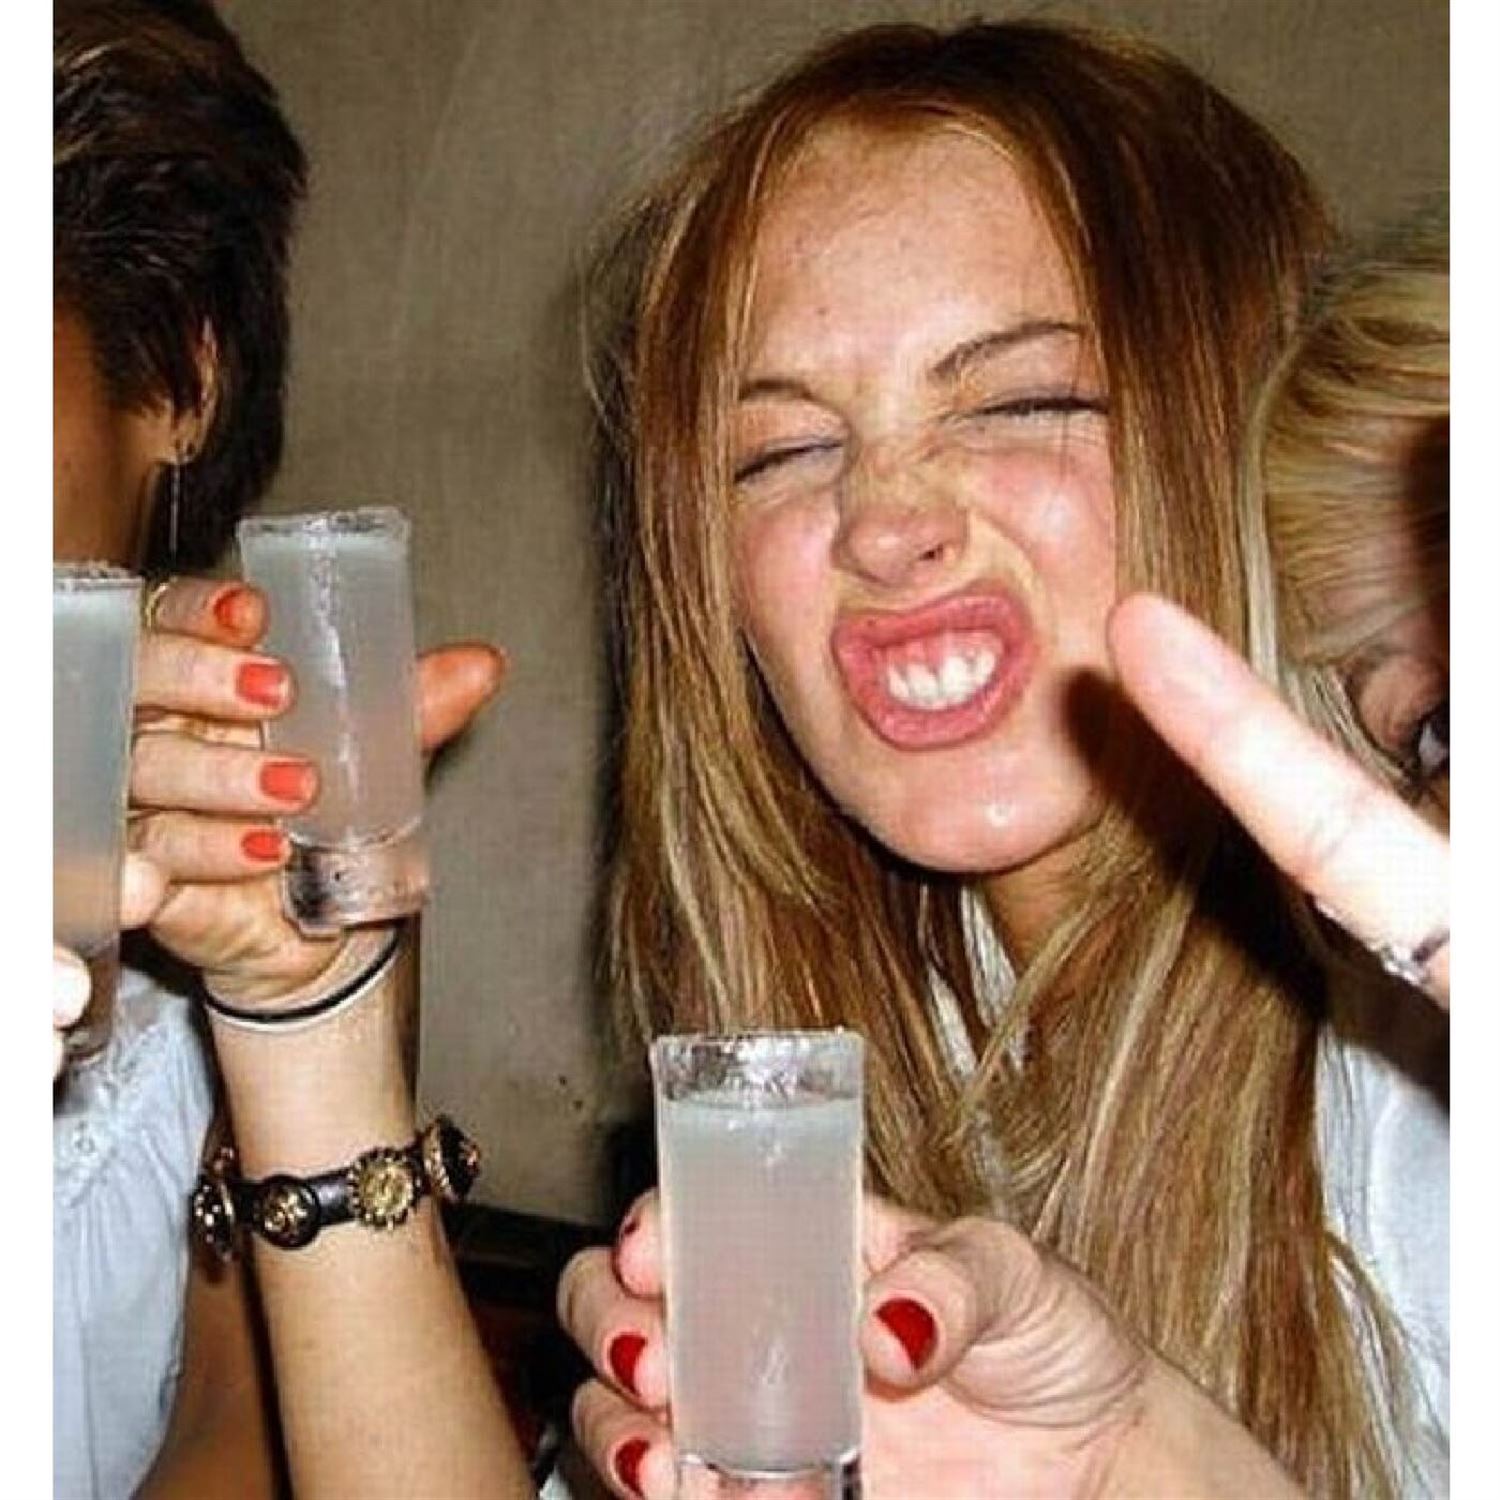 Weird Lindsay Lohan party